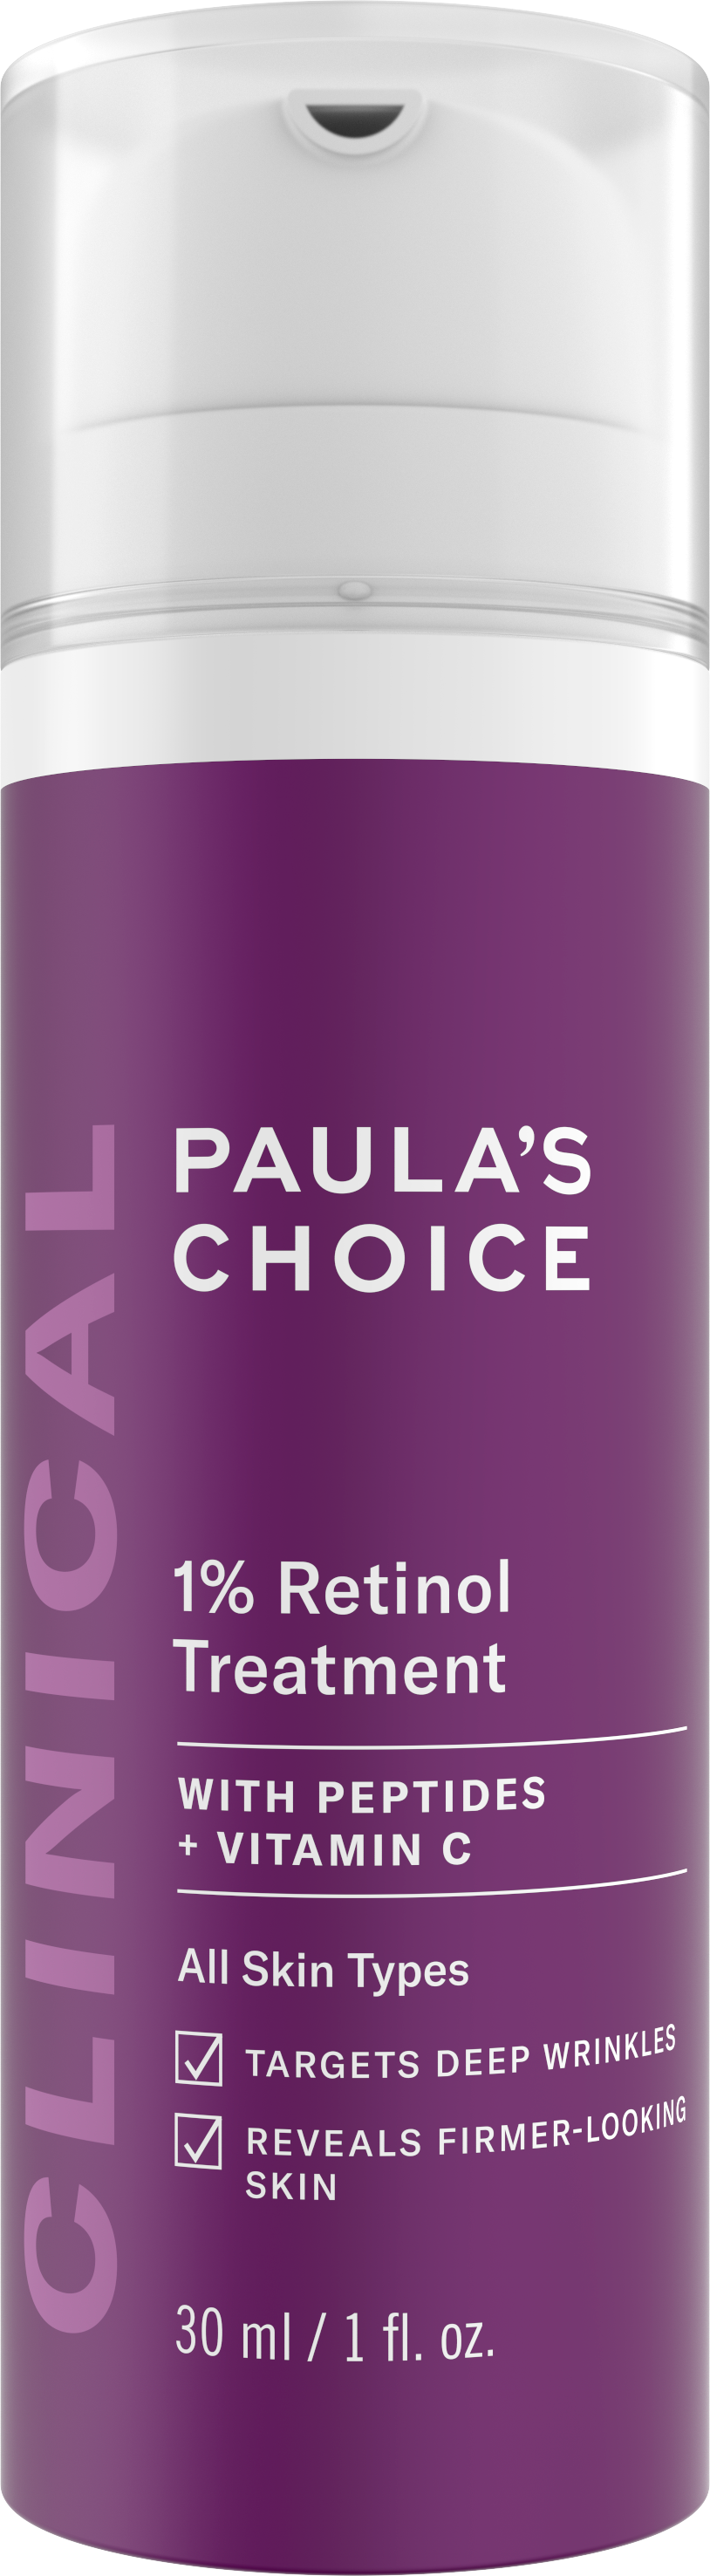 Paula's Choice Clinical 1% Retinol Treatment Paula's Choice Clinical 1% Retinol Treatment 1